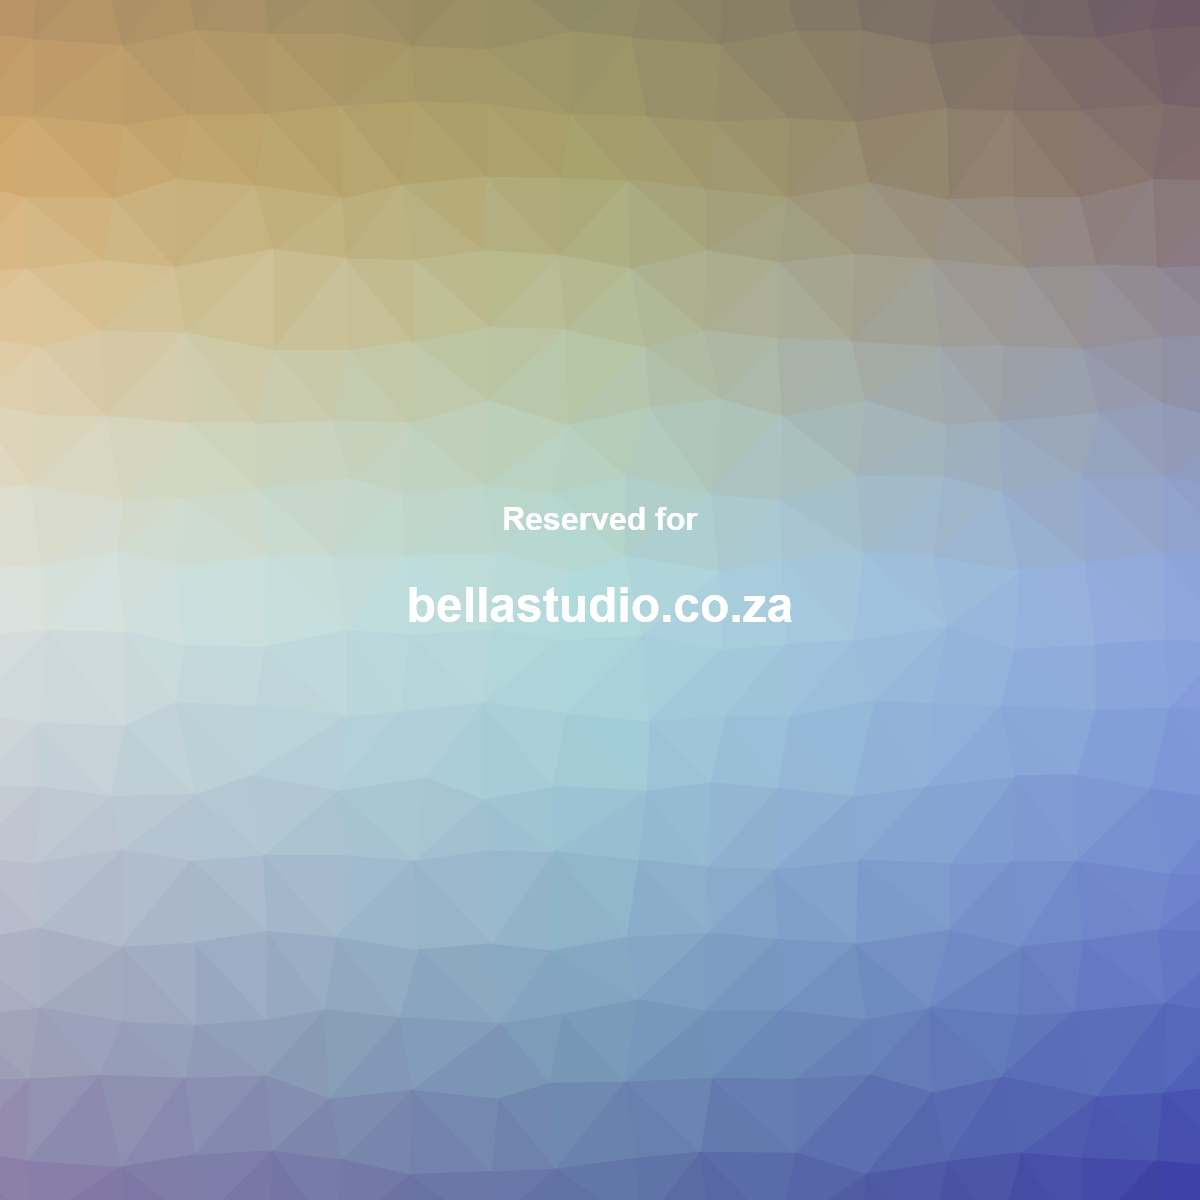 A complete backup of bellastudio.co.za